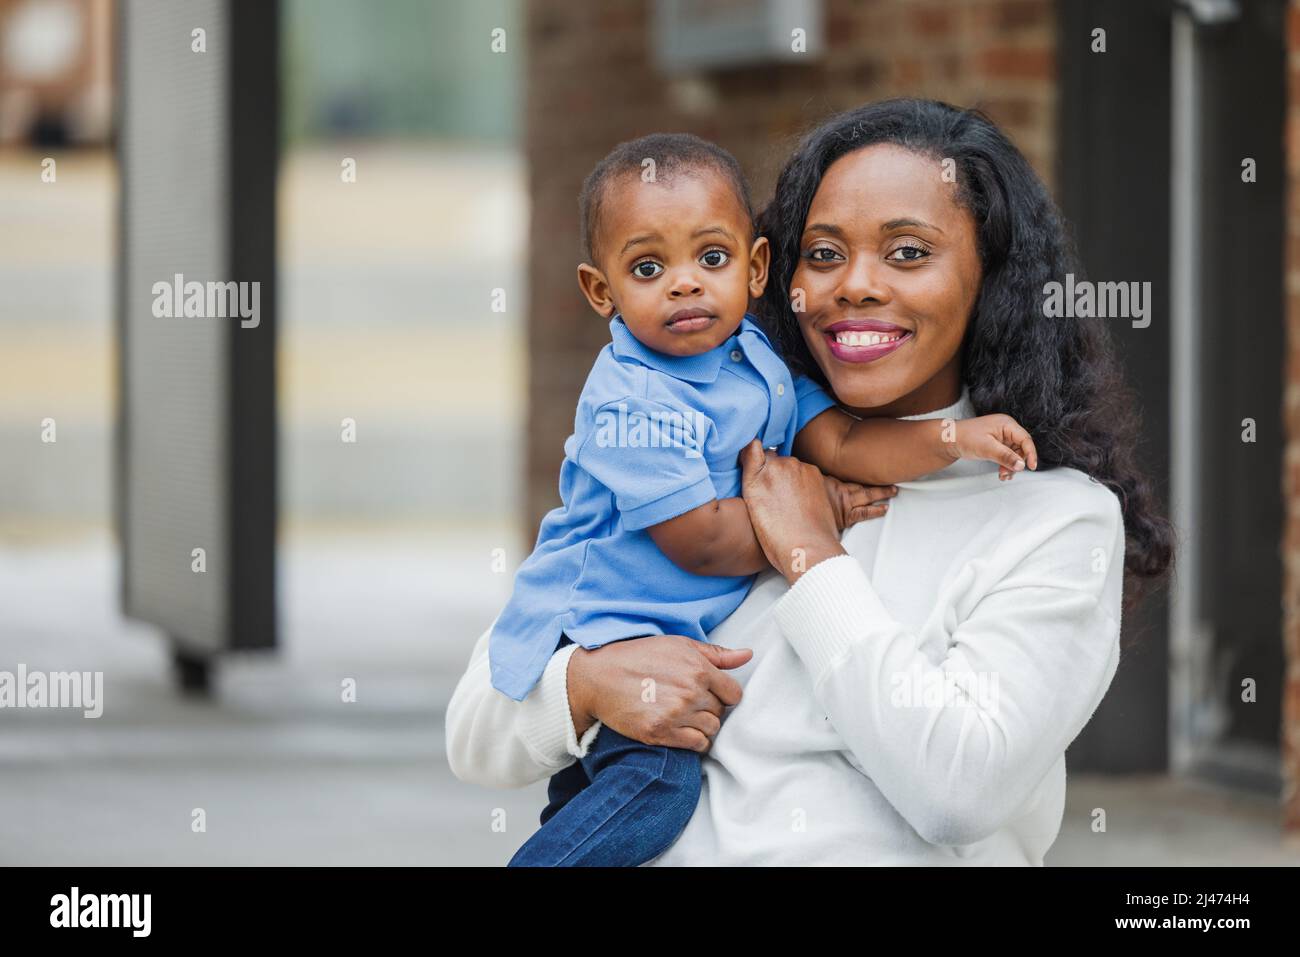 Une belle mère afro-américaine assise sur des marches à l'extérieur et tenant son petit garçon et il semble triste Banque D'Images